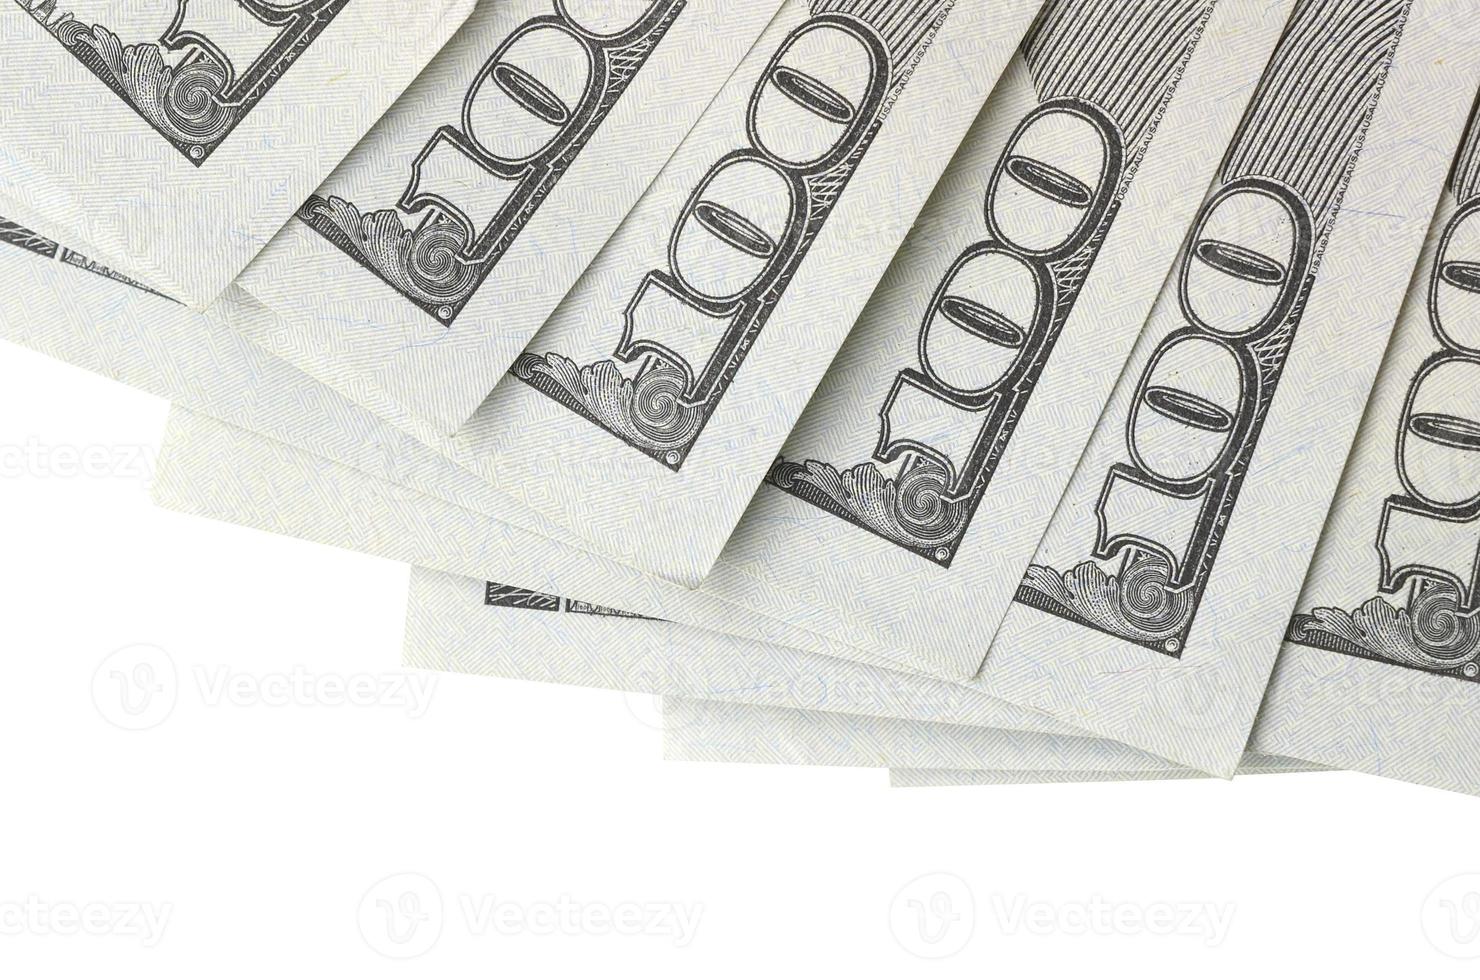 Dollar-Scheine. amerikanisches geld lokalisiert auf weiß mit kopienraum foto